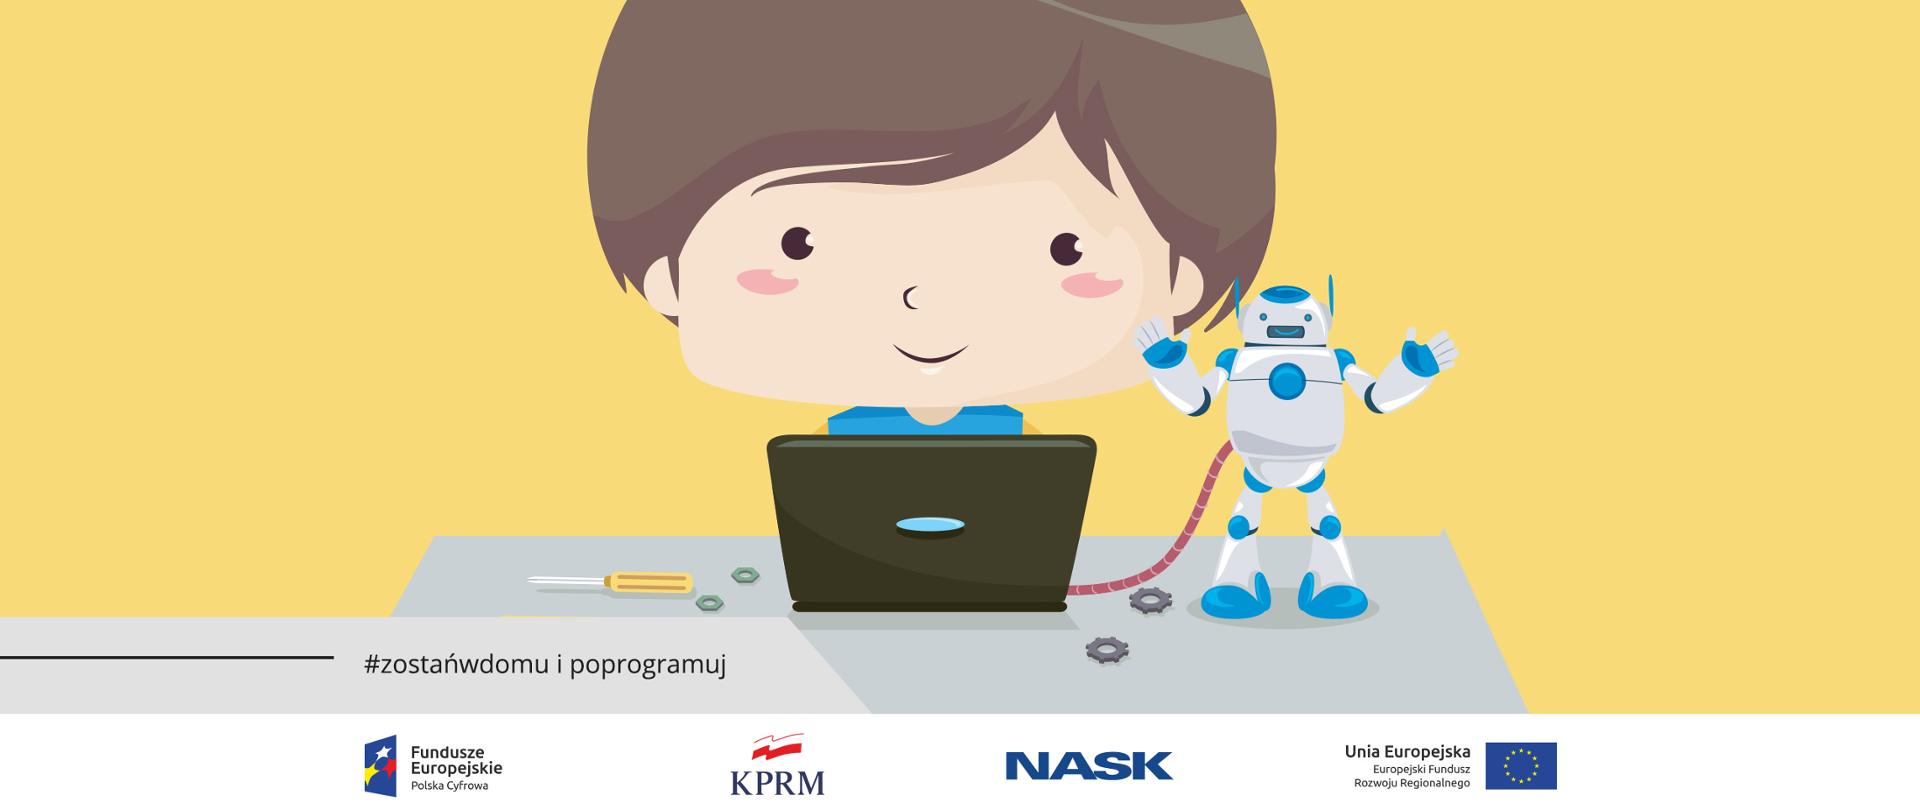 Grafika wektorowa - chłopiec siedzący za laptopem. Obok komputera stoi robot. Widać też śrubokręt i śrubki. 